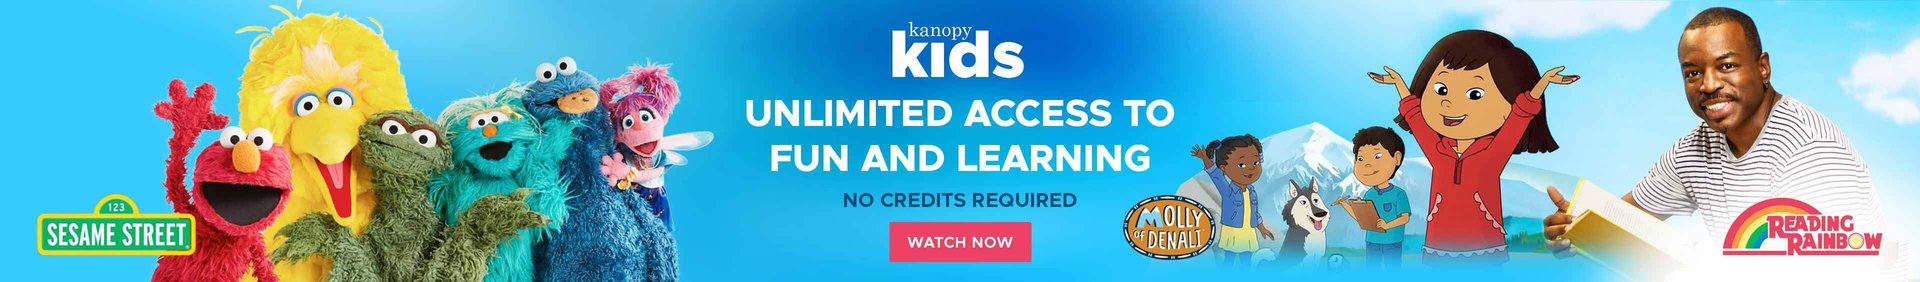 儿童Kanopy无限访问娱乐和学习文本，并使用视频静止图像